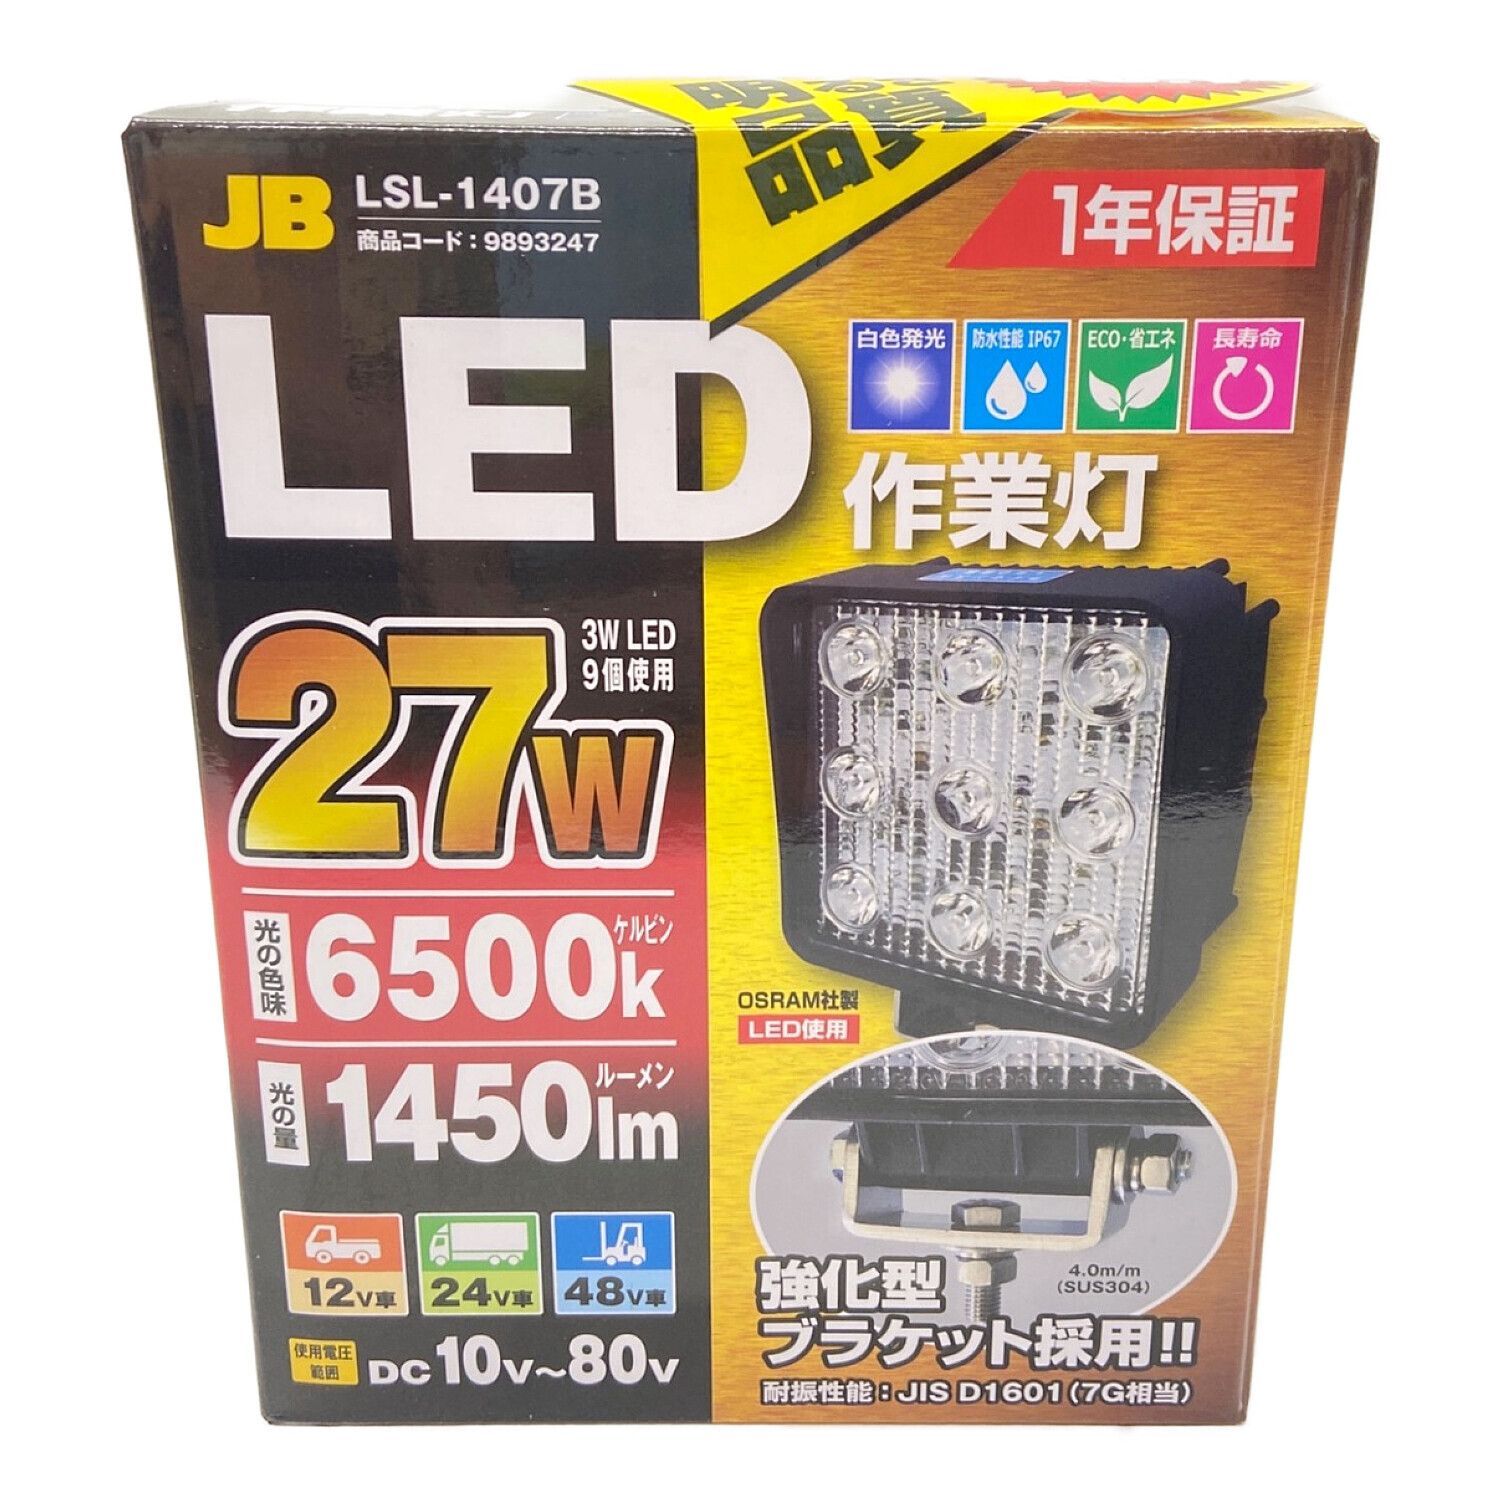 日本ボデーパーツ工業株式会社 LED作業灯 JB 3Pセット LSL-1402B LED 